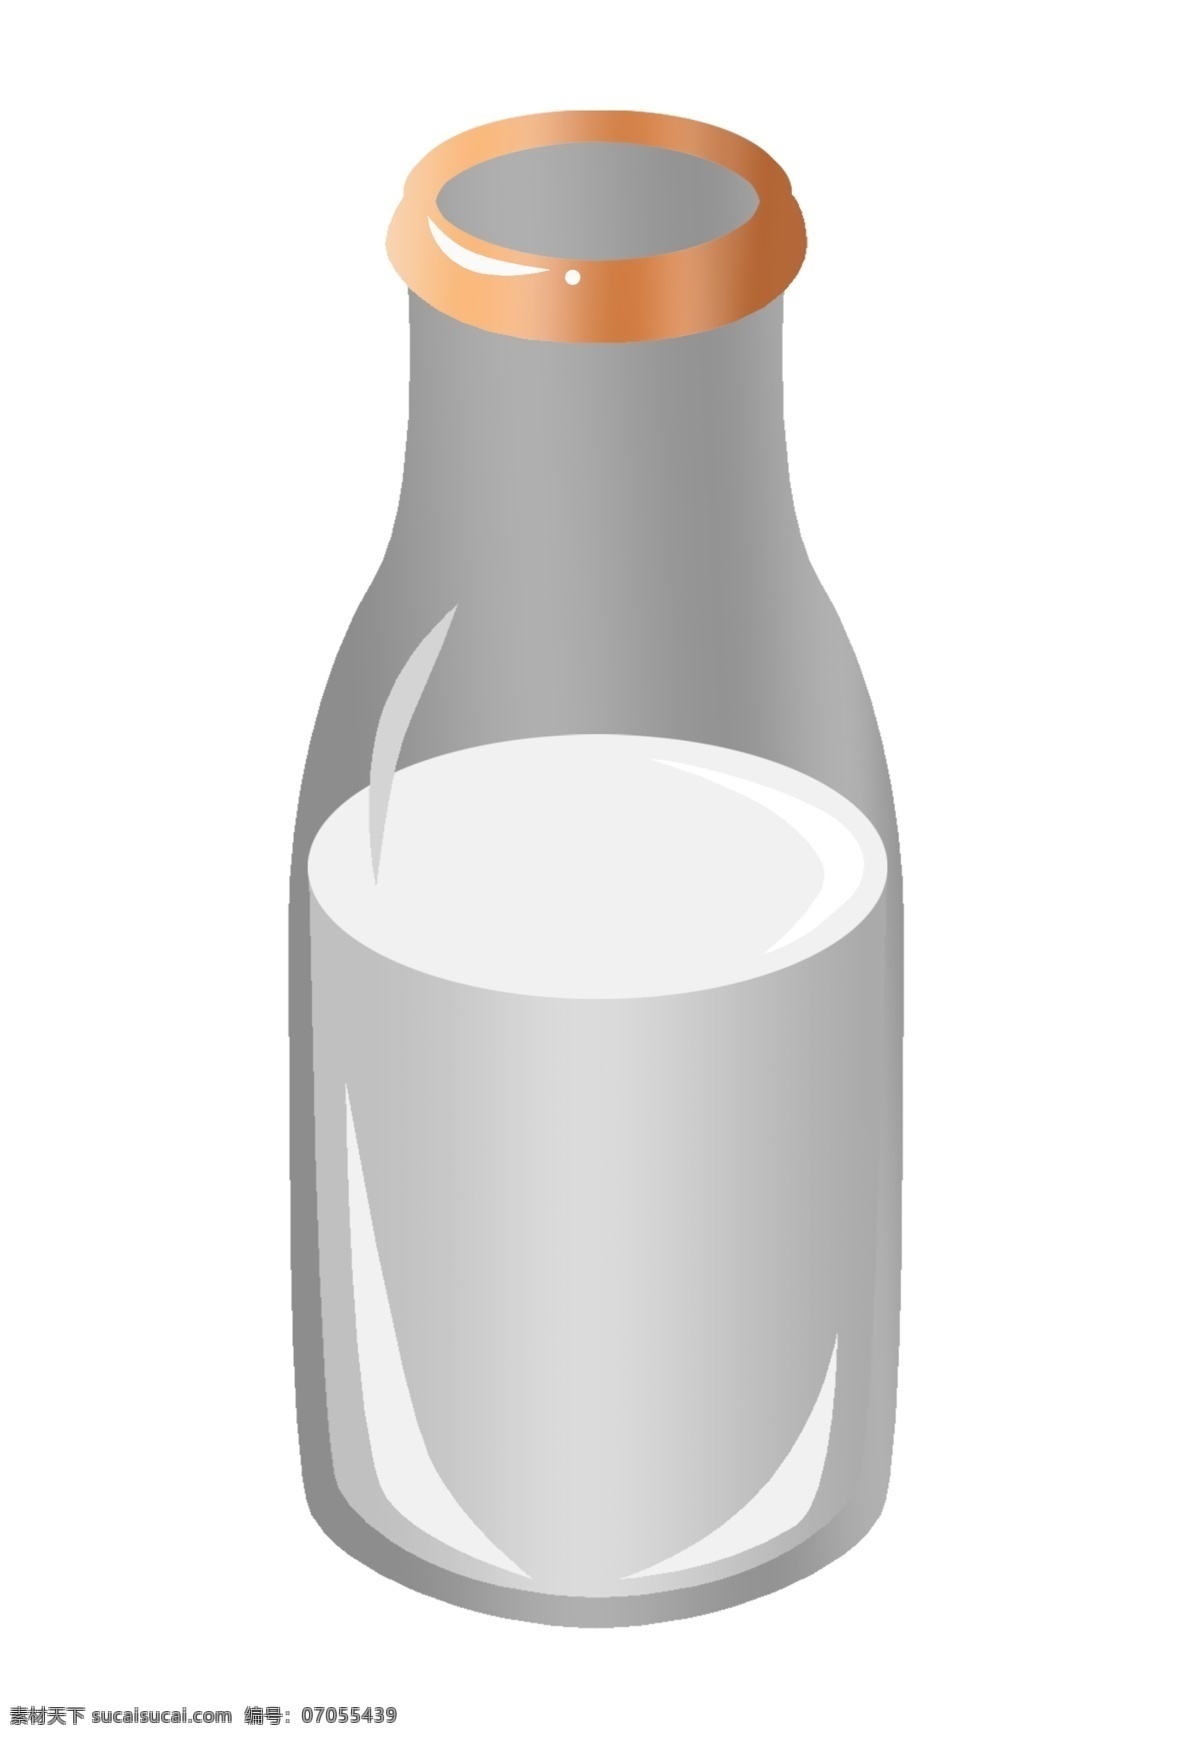 手绘 白色 瓶子 插画 白色的瓶子 玻璃的瓶子 卡通插画 手绘插画 容器 玻璃 器皿 漂亮的瓶子